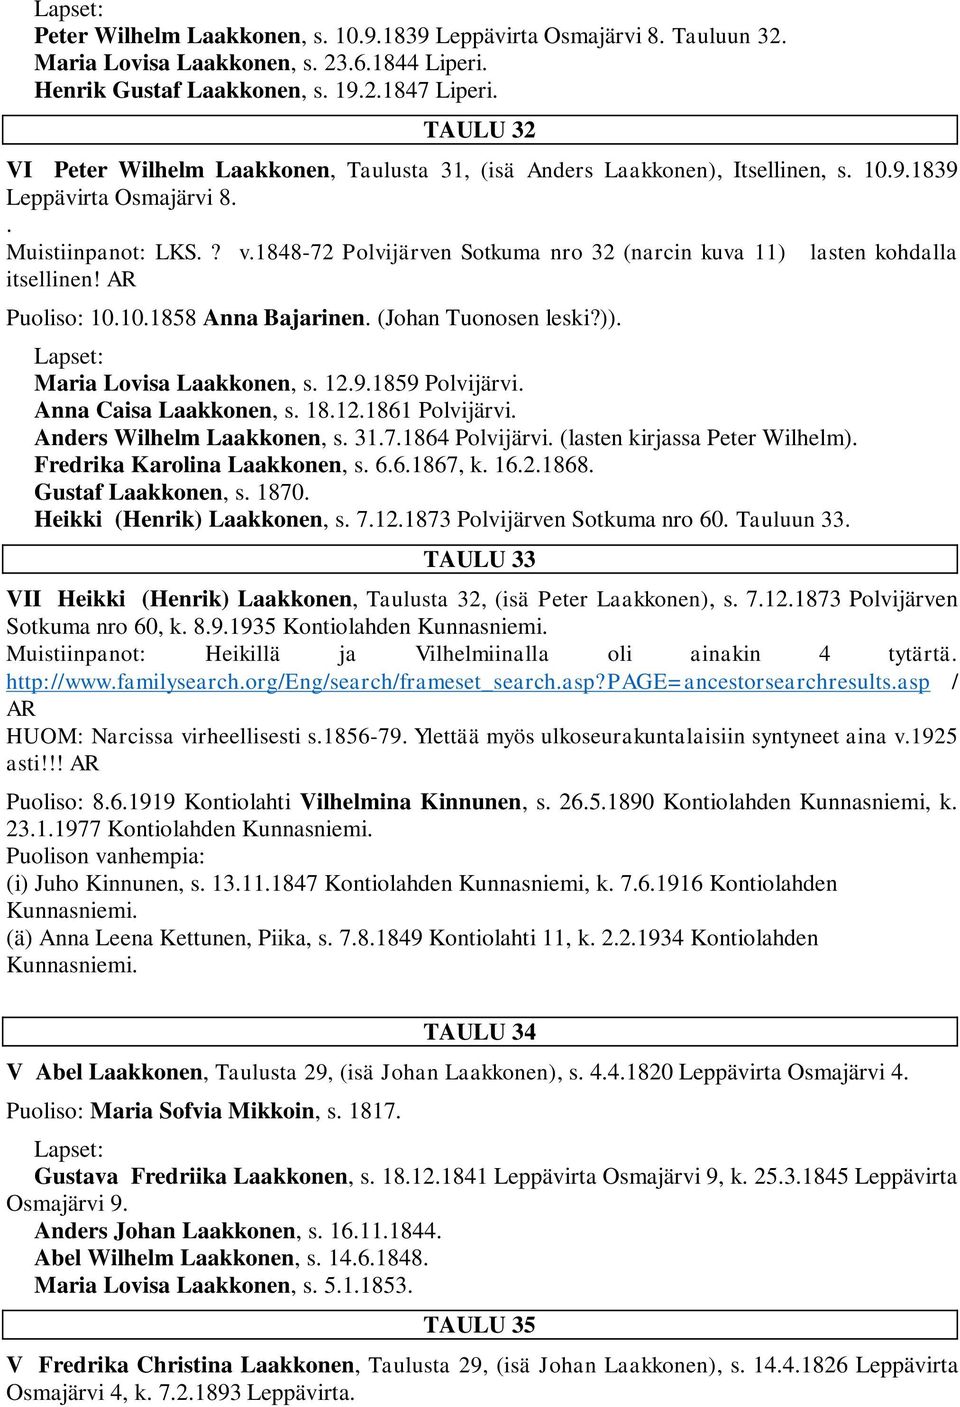 1848-72 Polvijärven Sotkuma nro 32 (narcin kuva 11) lasten kohdalla itsellinen! AR Puoliso: 10.10.1858 Anna Bajarinen. (Johan Tuonosen leski?)). Maria Lovisa Laakkonen, s. 12.9.1859 Polvijärvi.